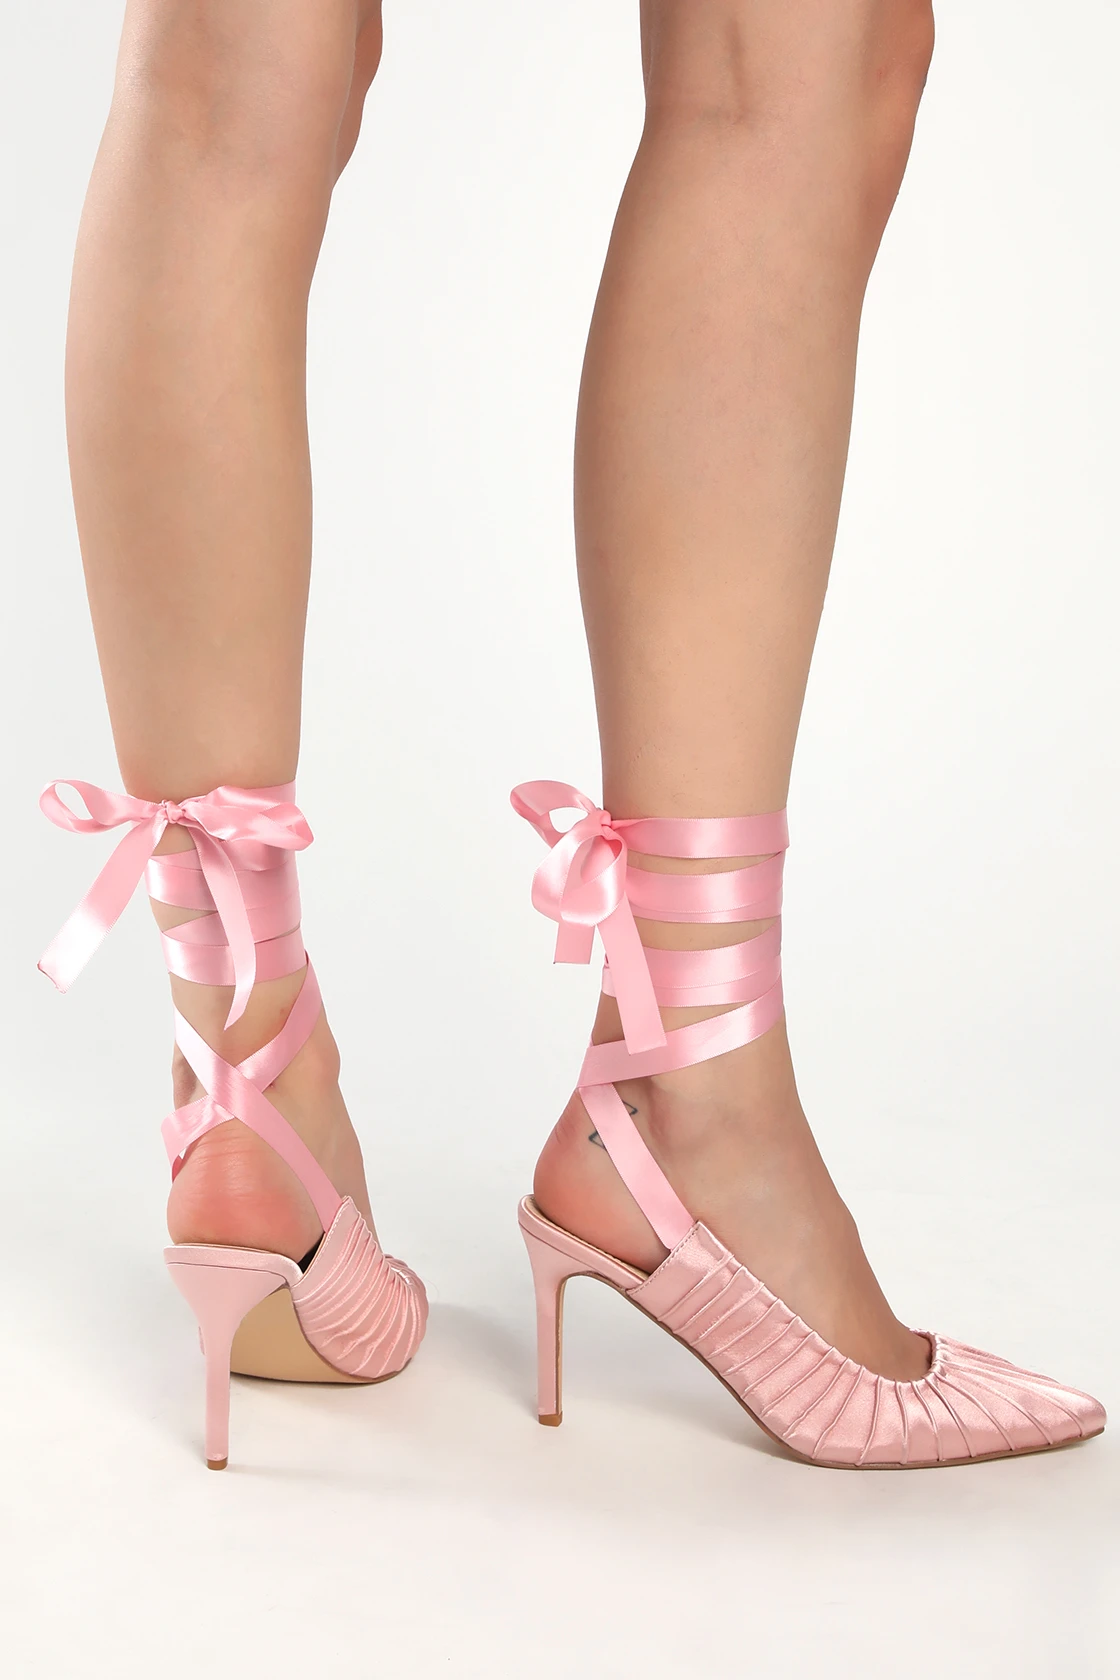 Pink heels from Lulus